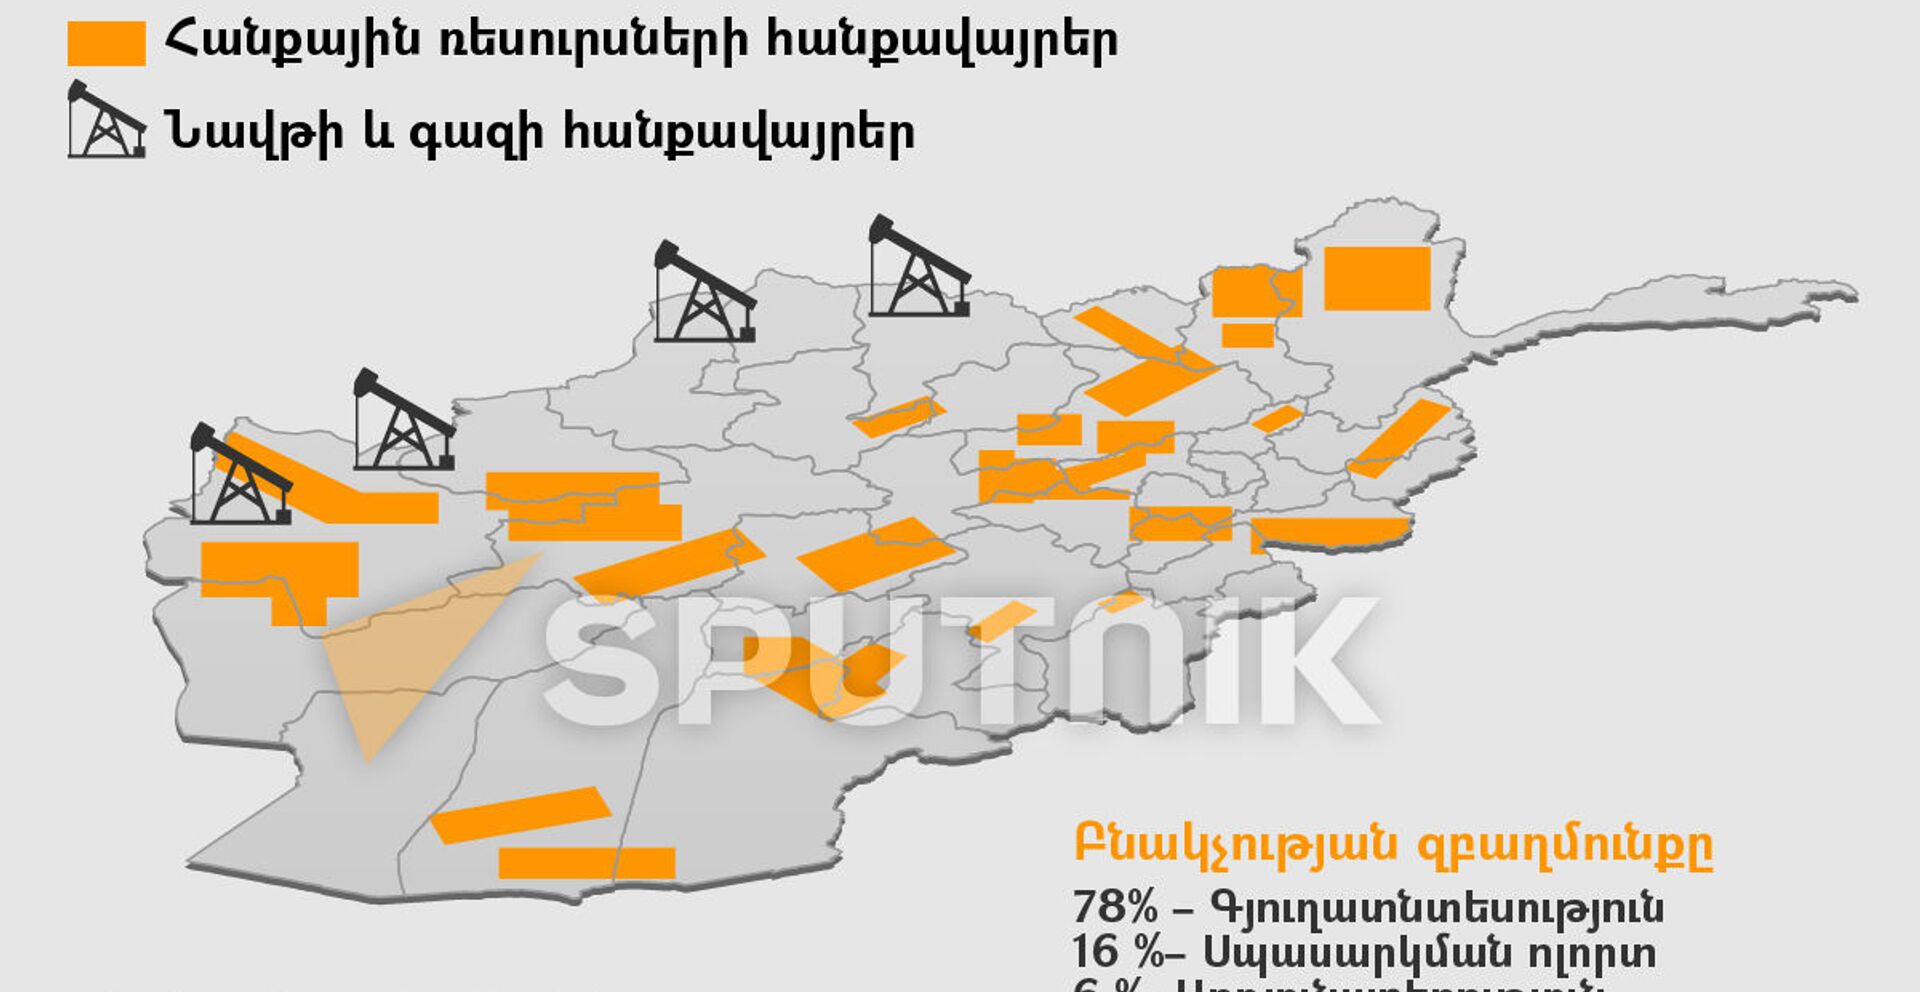 Աֆղանստան. բնակչությունը և ռեսուրսները - Sputnik Արմենիա, 1920, 18.08.2021